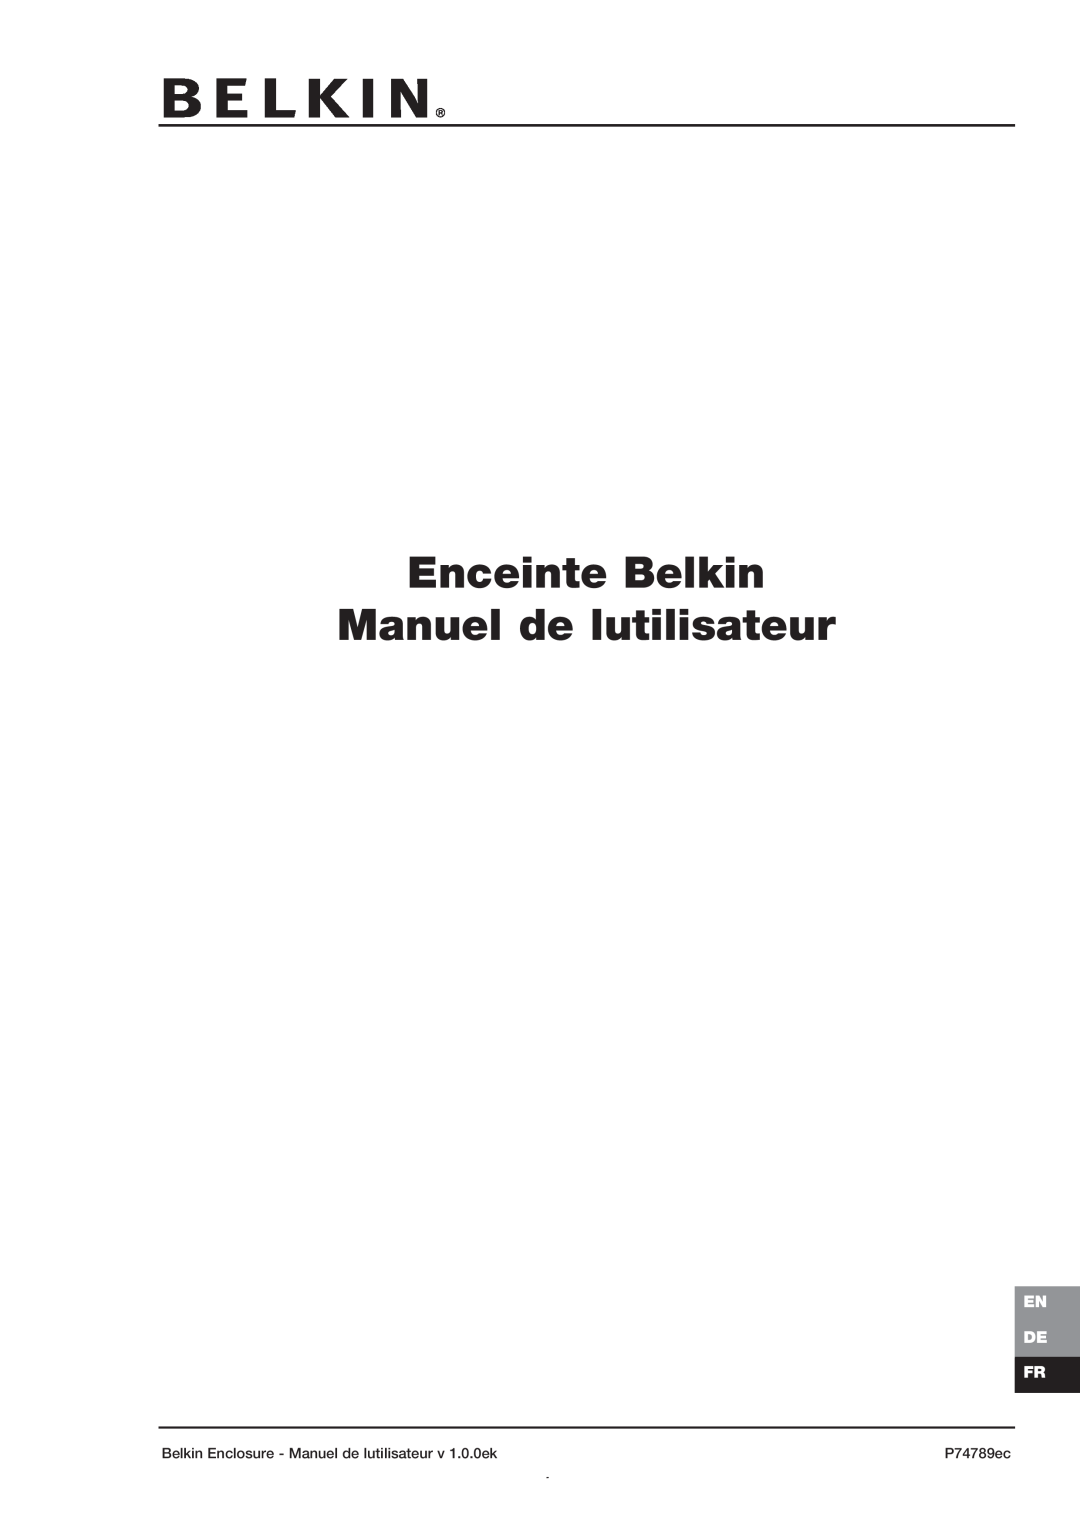 Belkin 42U Enceinte Belkin Manuel de lutilisateur, En De Fr, Belkin Enclosure - Manuel de lutilisateur v 1.0.0ek, P74789ec 